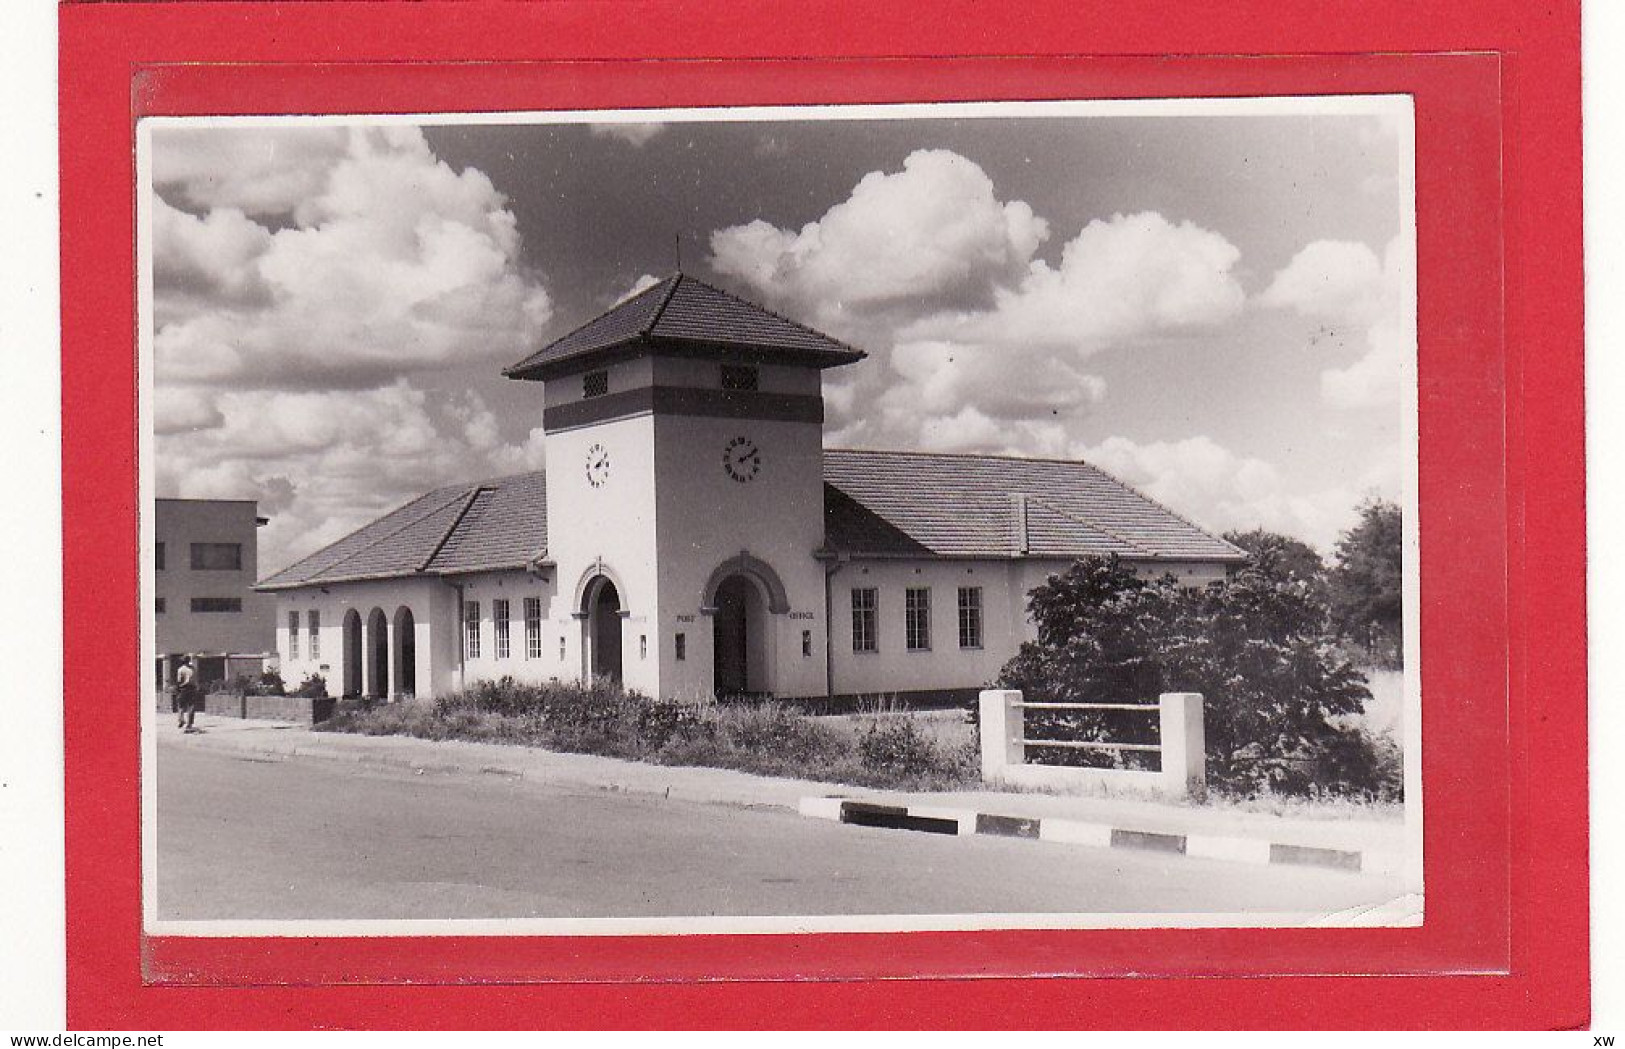 AFRIQUE - AFRIQUE AUSTRALE - ZIMBABWE - EX- RHODESIE - PHOTO DE KWEKWE (Que - Que) - L'Eglise - C10837/38 - Simbabwe